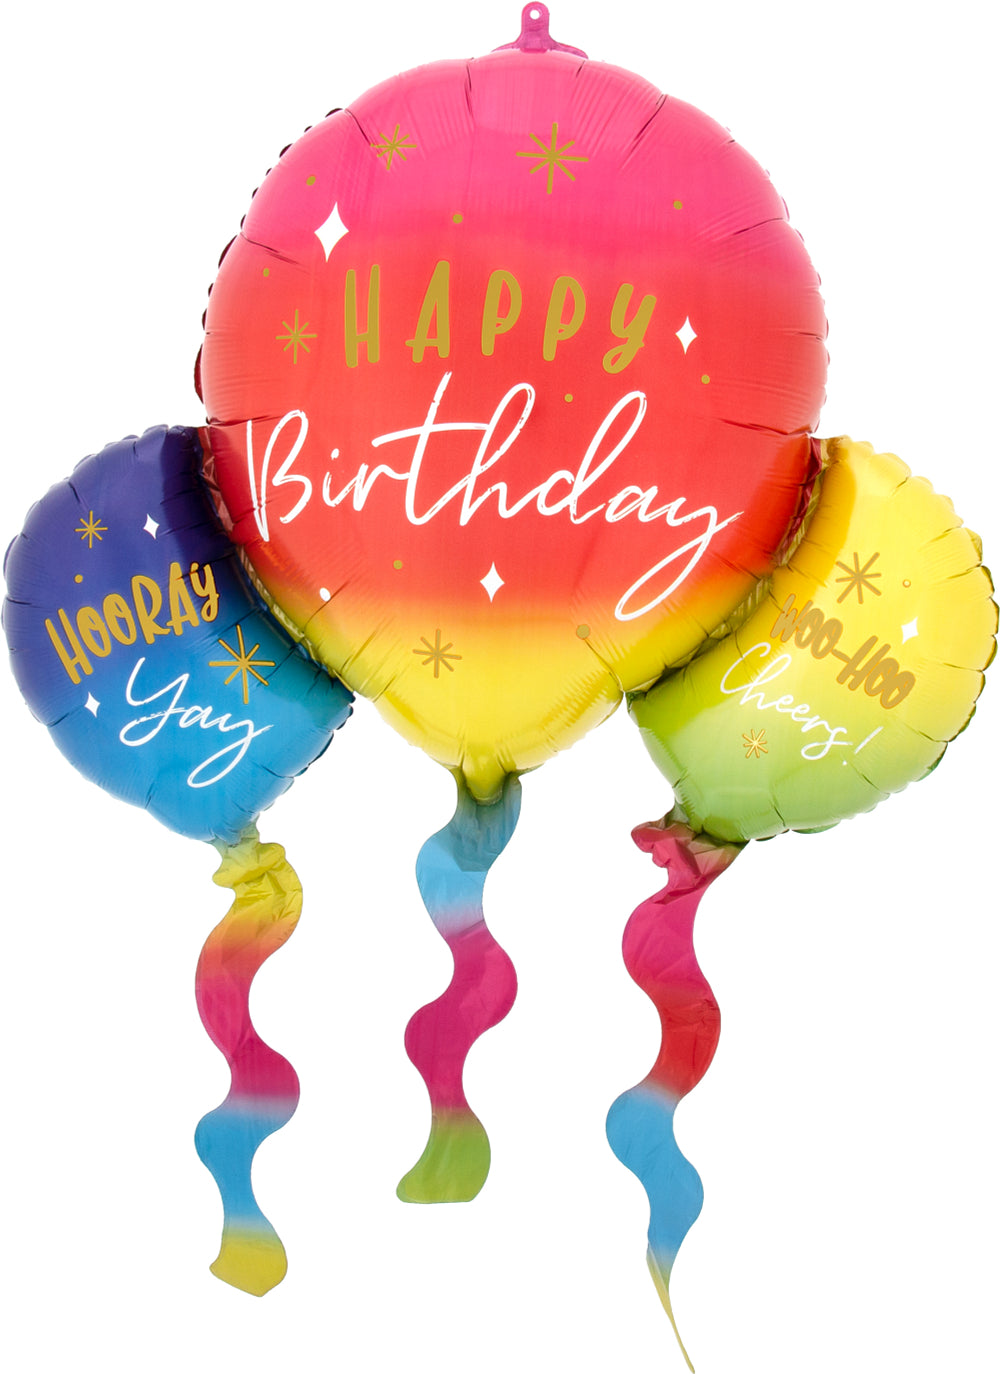 36” Happy Birthday Supershape mylar